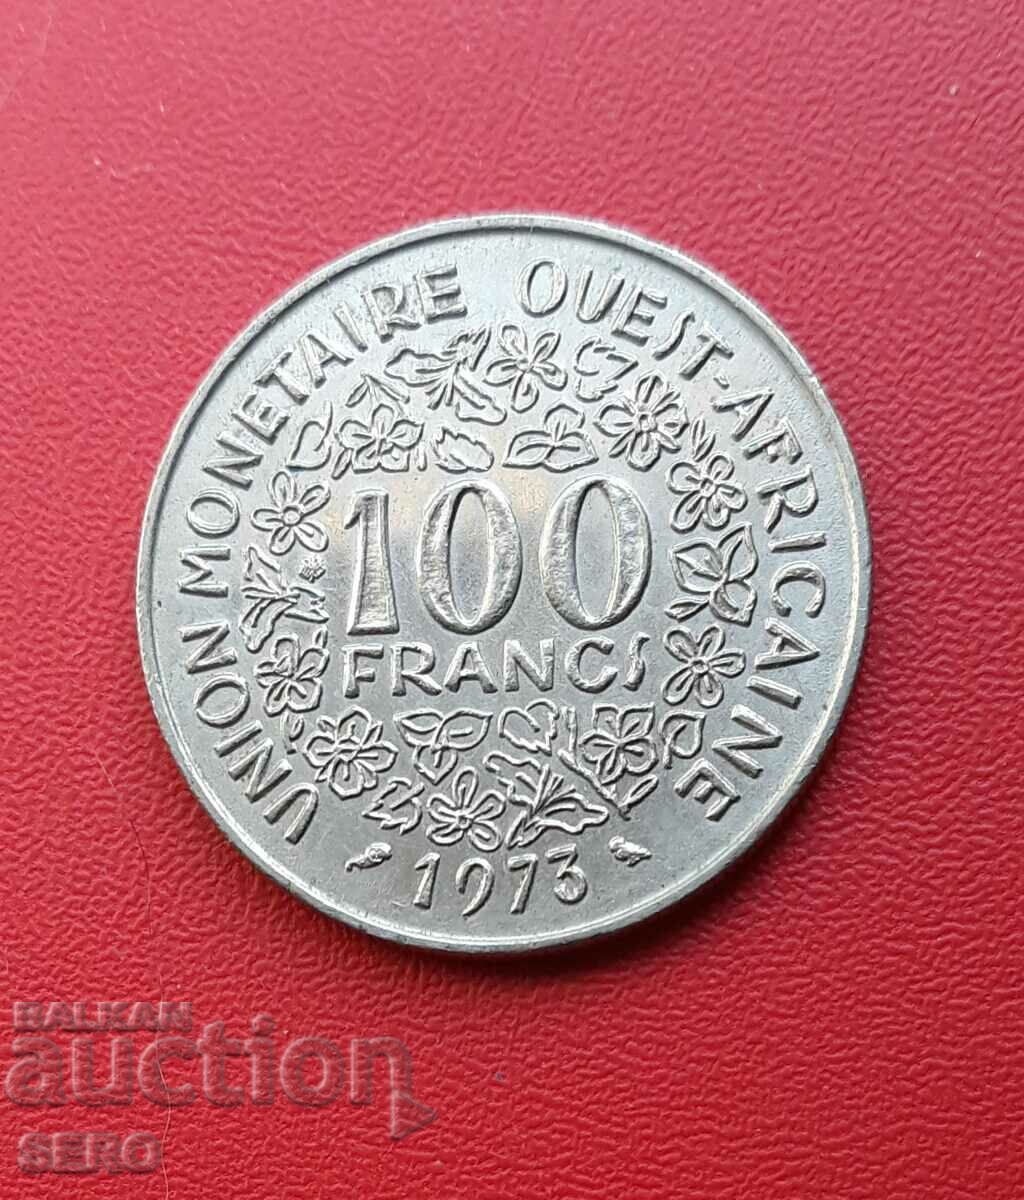 Africa de Vest Franceză - 100 de franci 1973